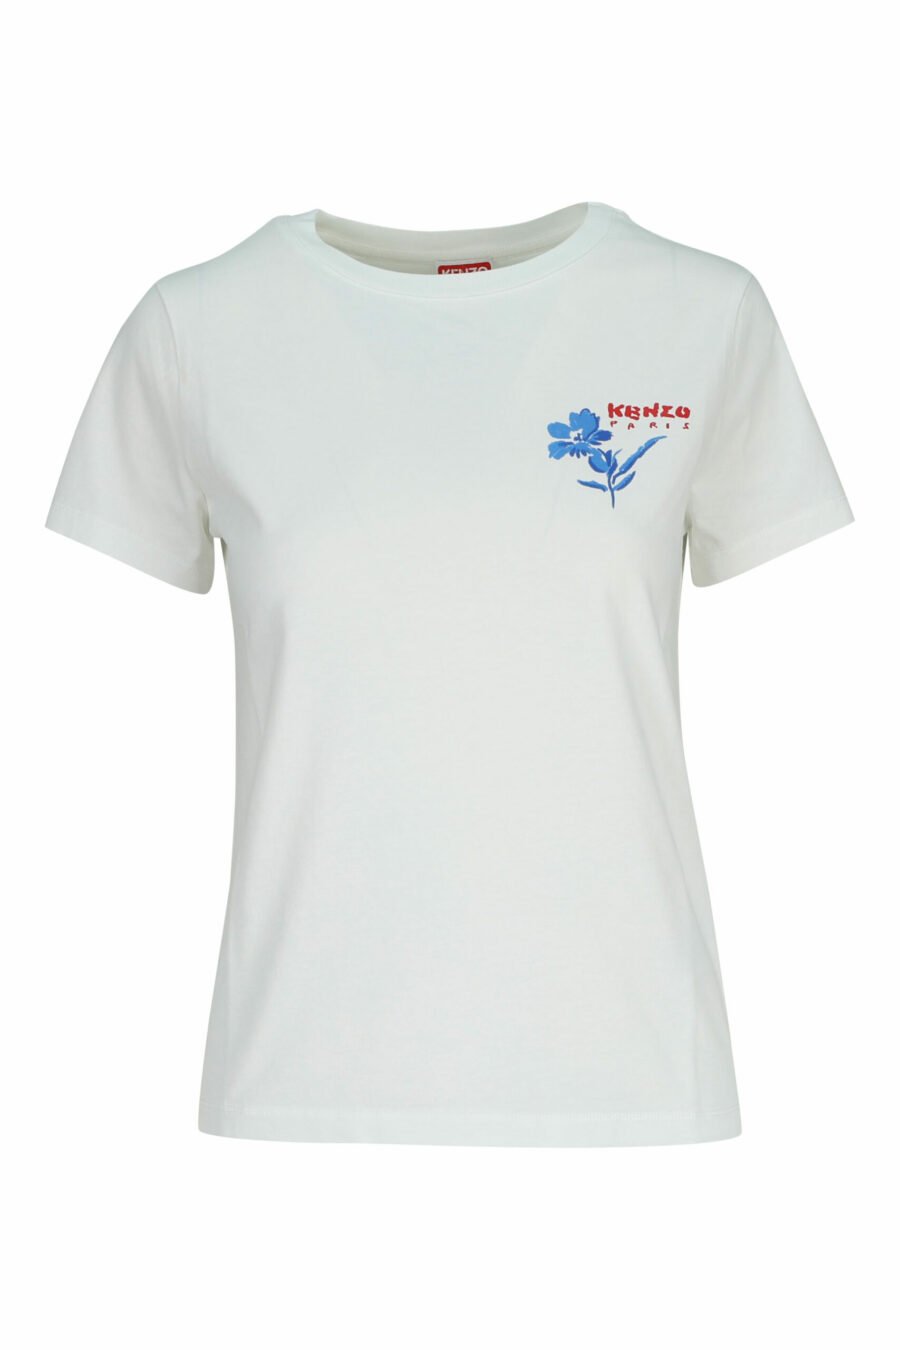 Weißes T-Shirt mit Minilogo "gezeichnete Blume" - 3612230587281 skaliert